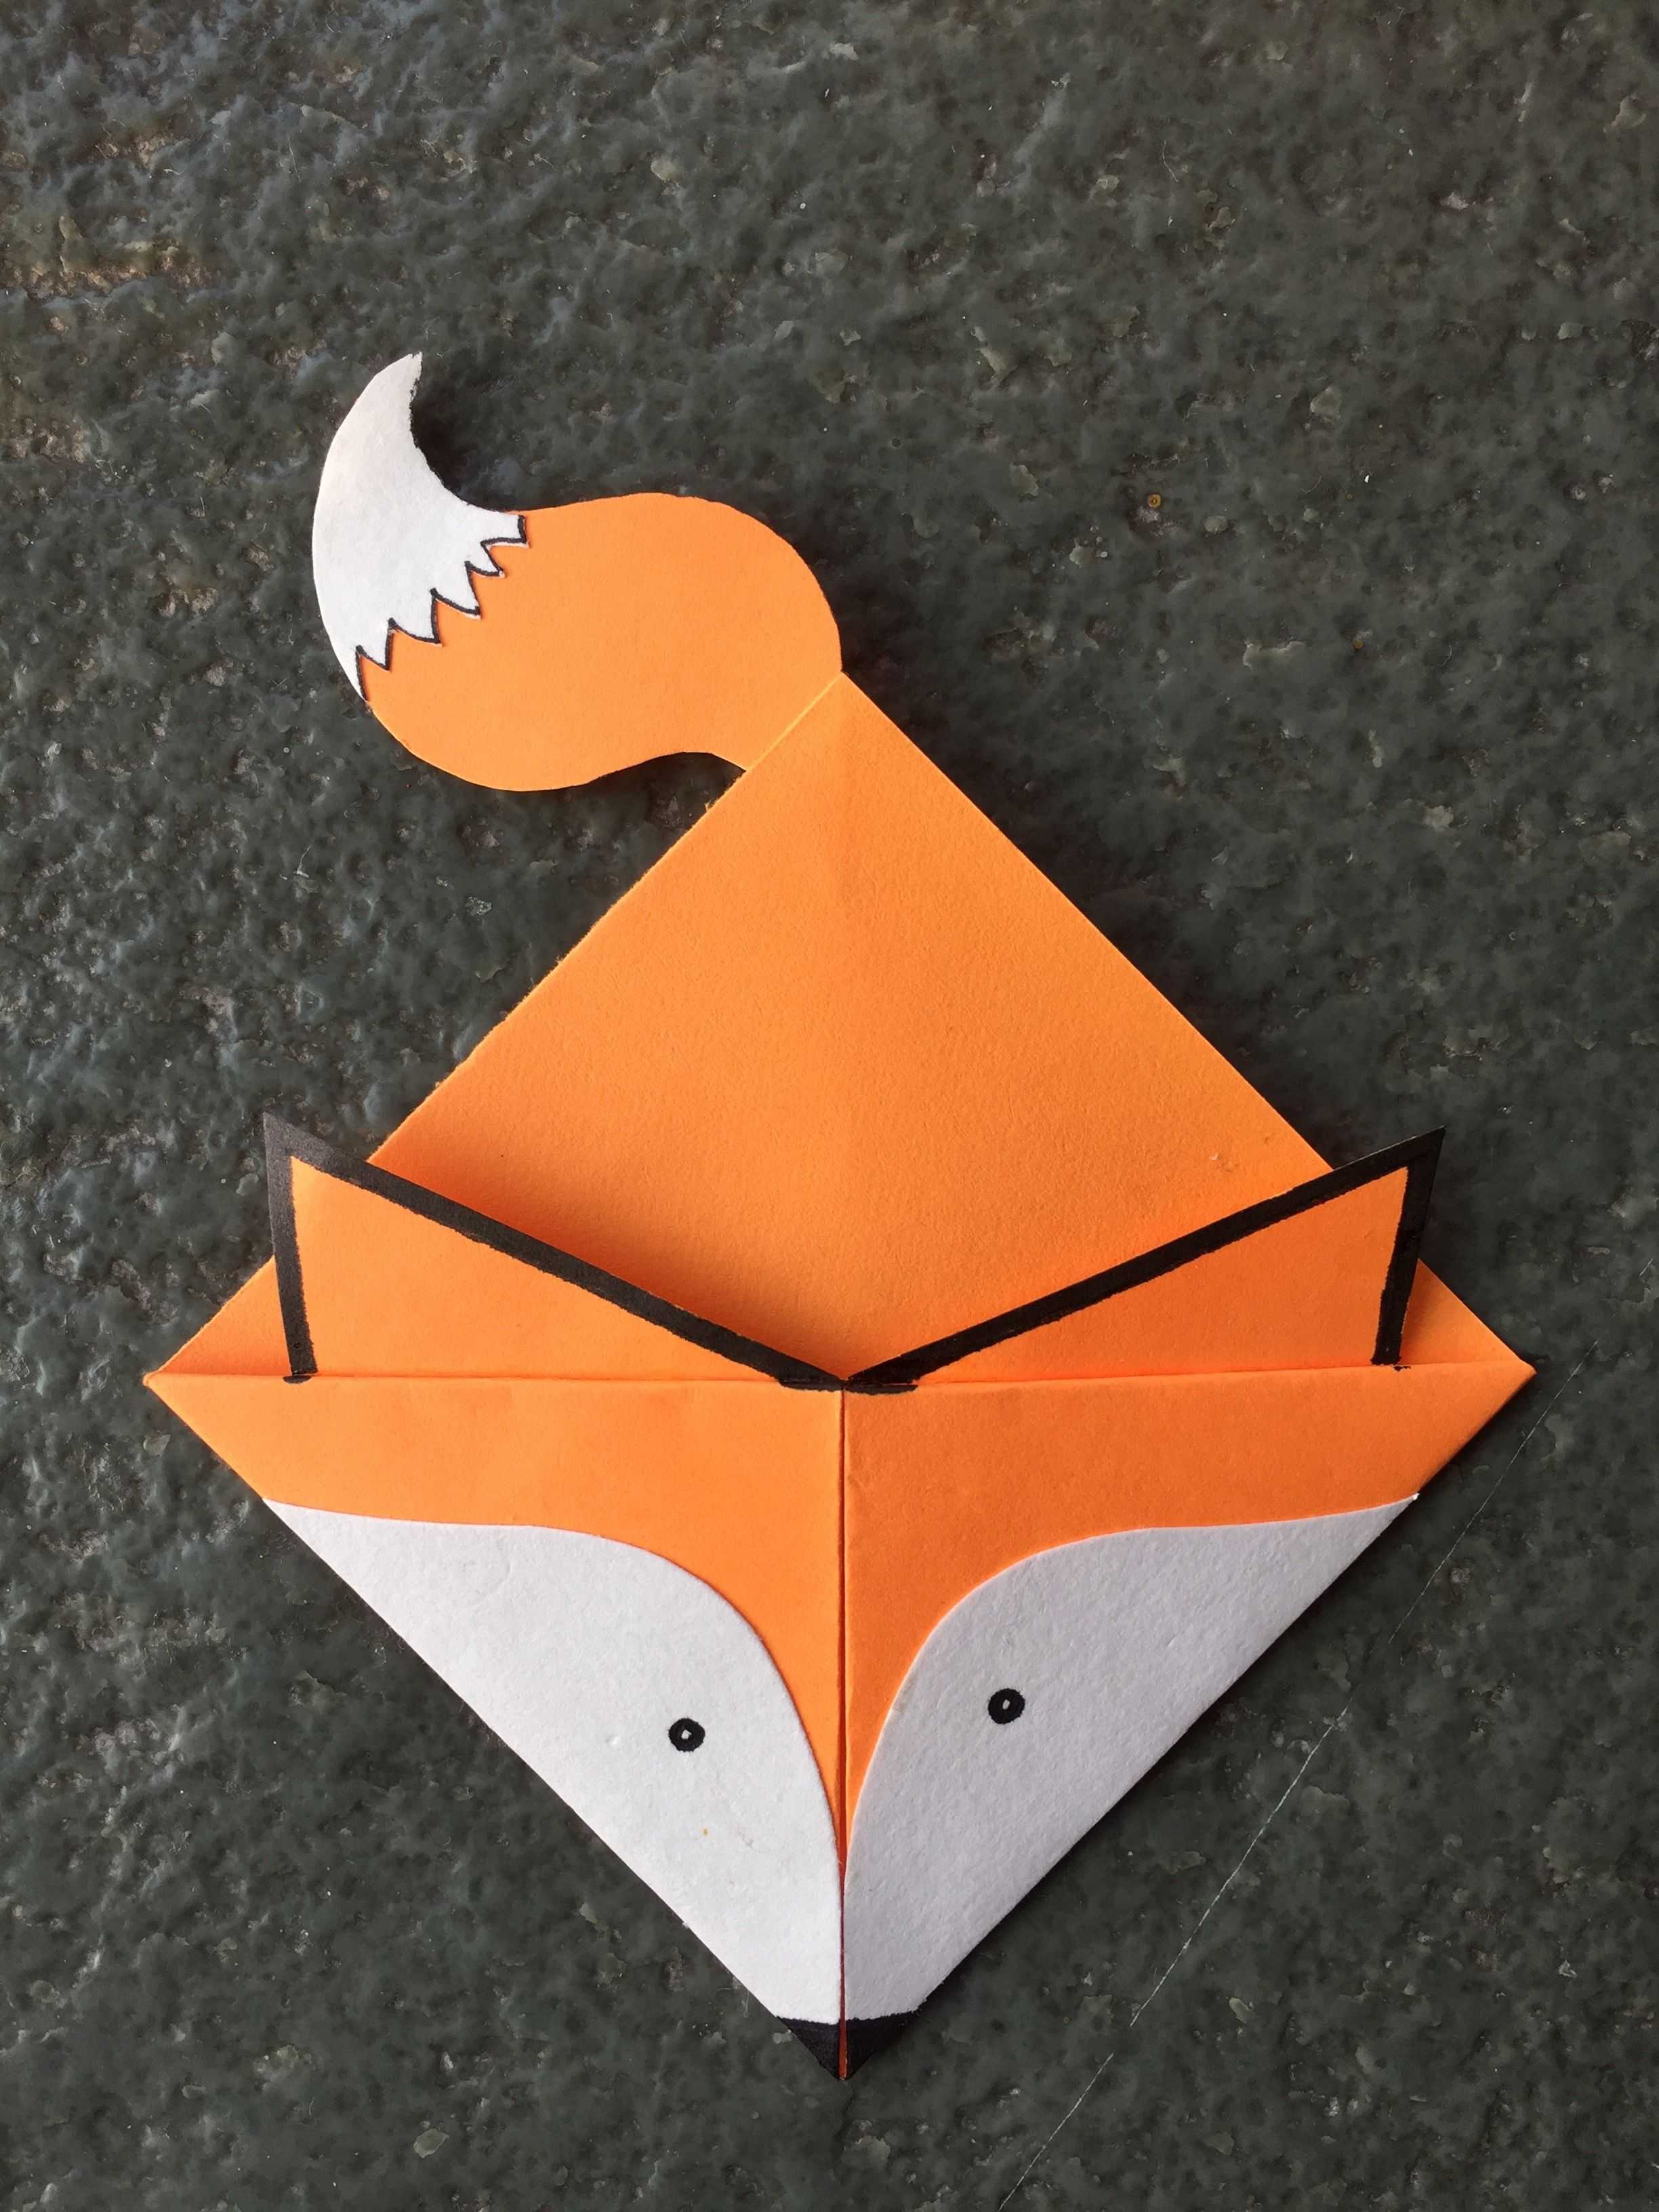 Кубик оригами: варианты и схемы сборки в фото и видео мк